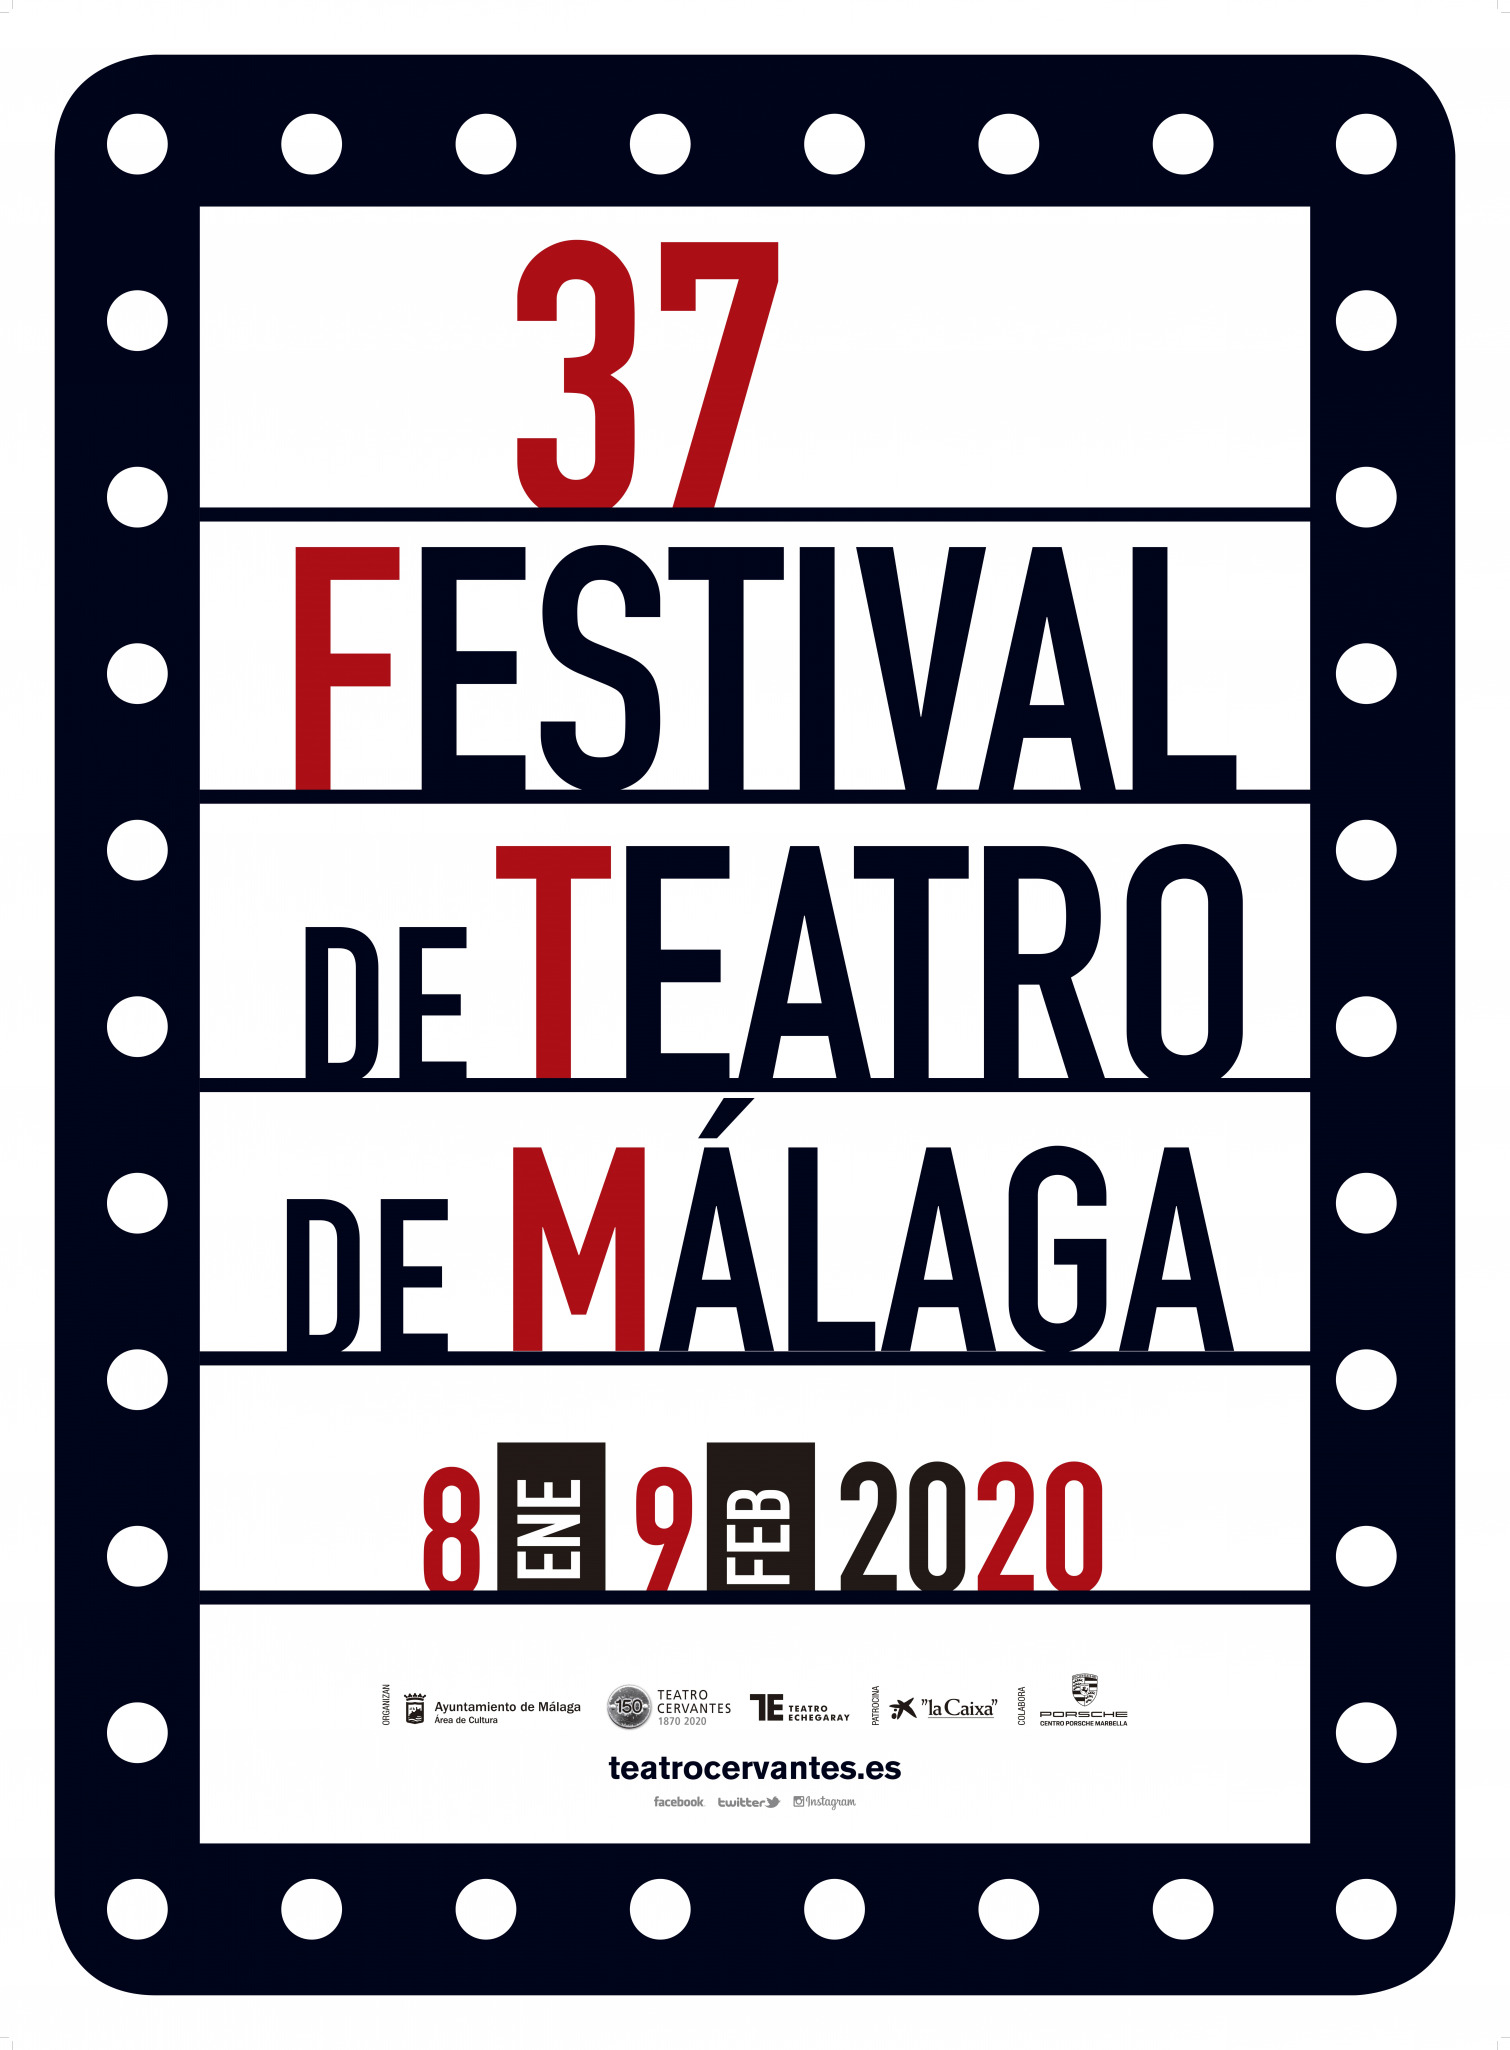 37 Festival de Teatro de Málaga 2020 - Programación Completa